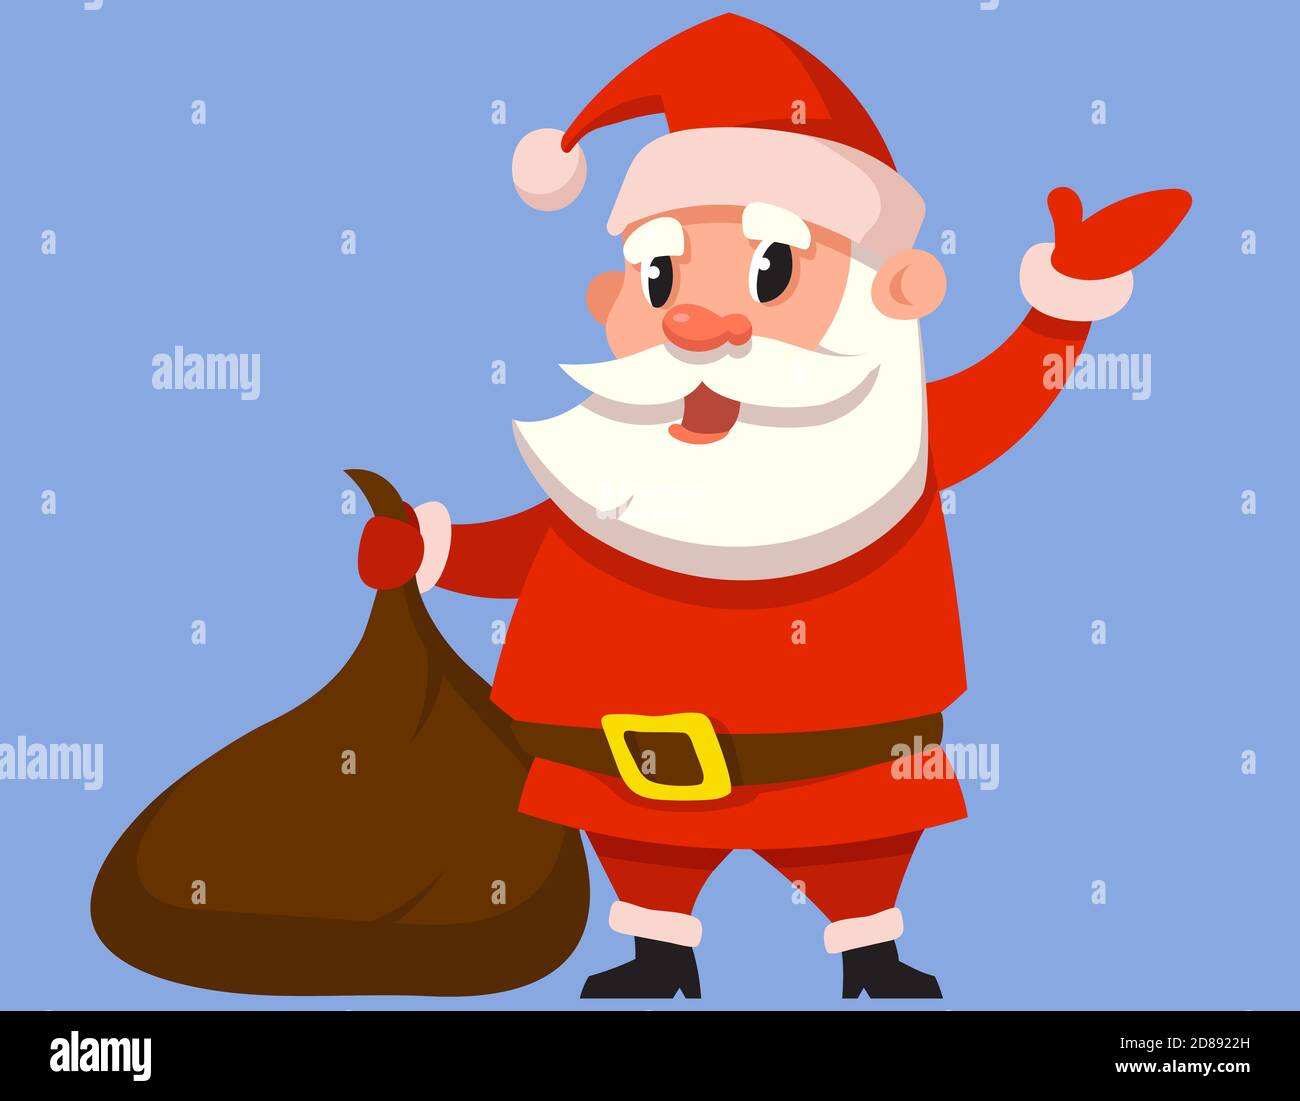 Weihnachtsmann hält Geschenksack. Weihnachtsfigur im Cartoon-Stil. Stock Vektor